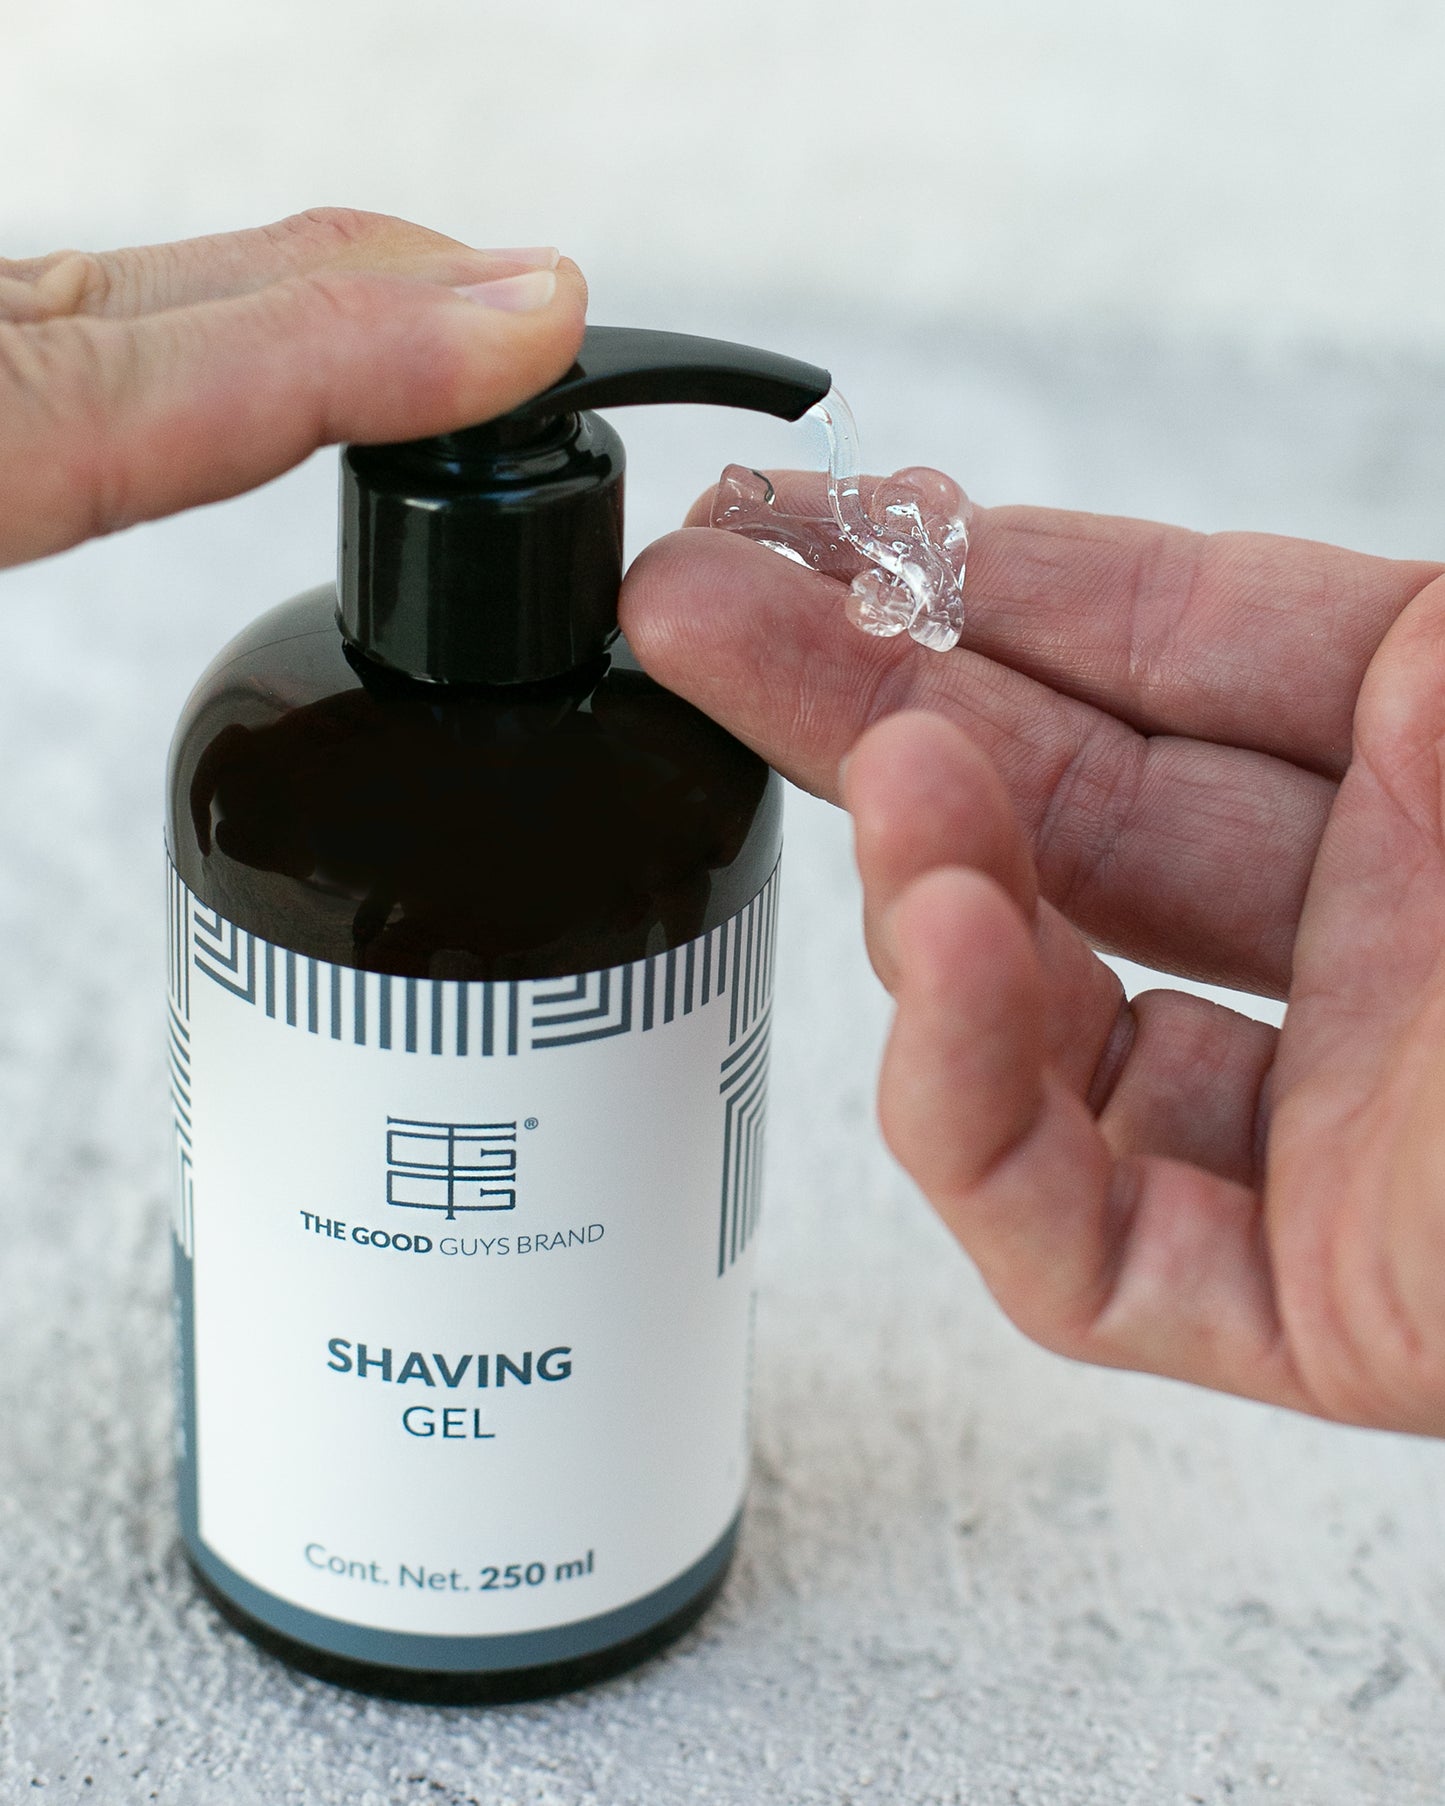 Shaving gel 250ml / fl. oz